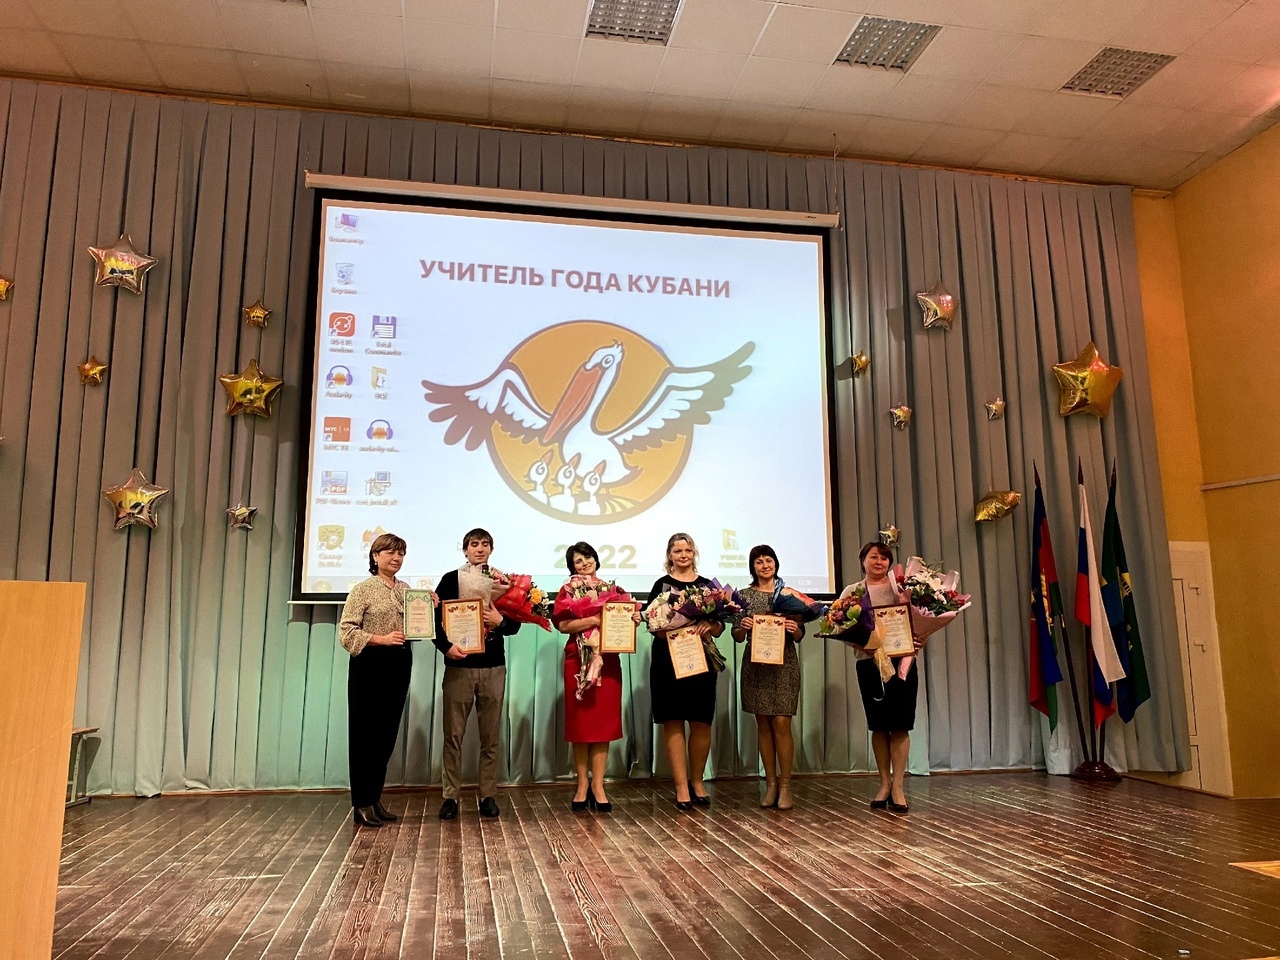 Учитель школы №17 победил в муниципальном этапе конкурса «Учитель года Кубани»